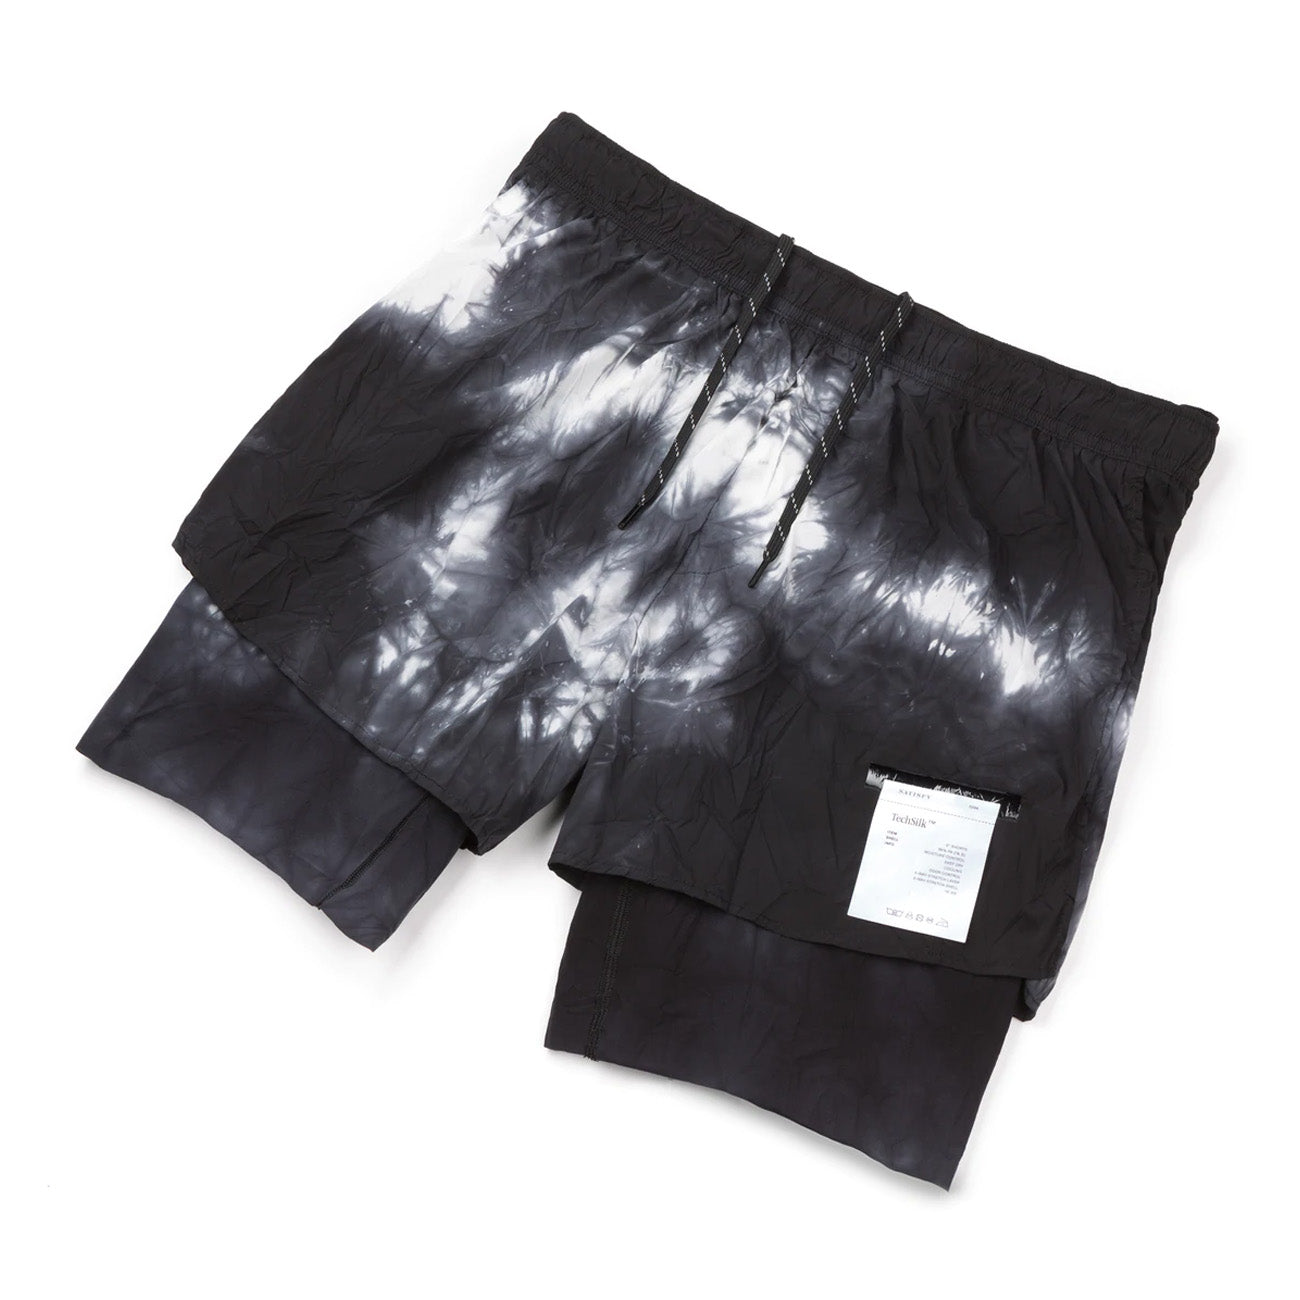 Satisfy Running Techsilk 8 Shorts Black Batik